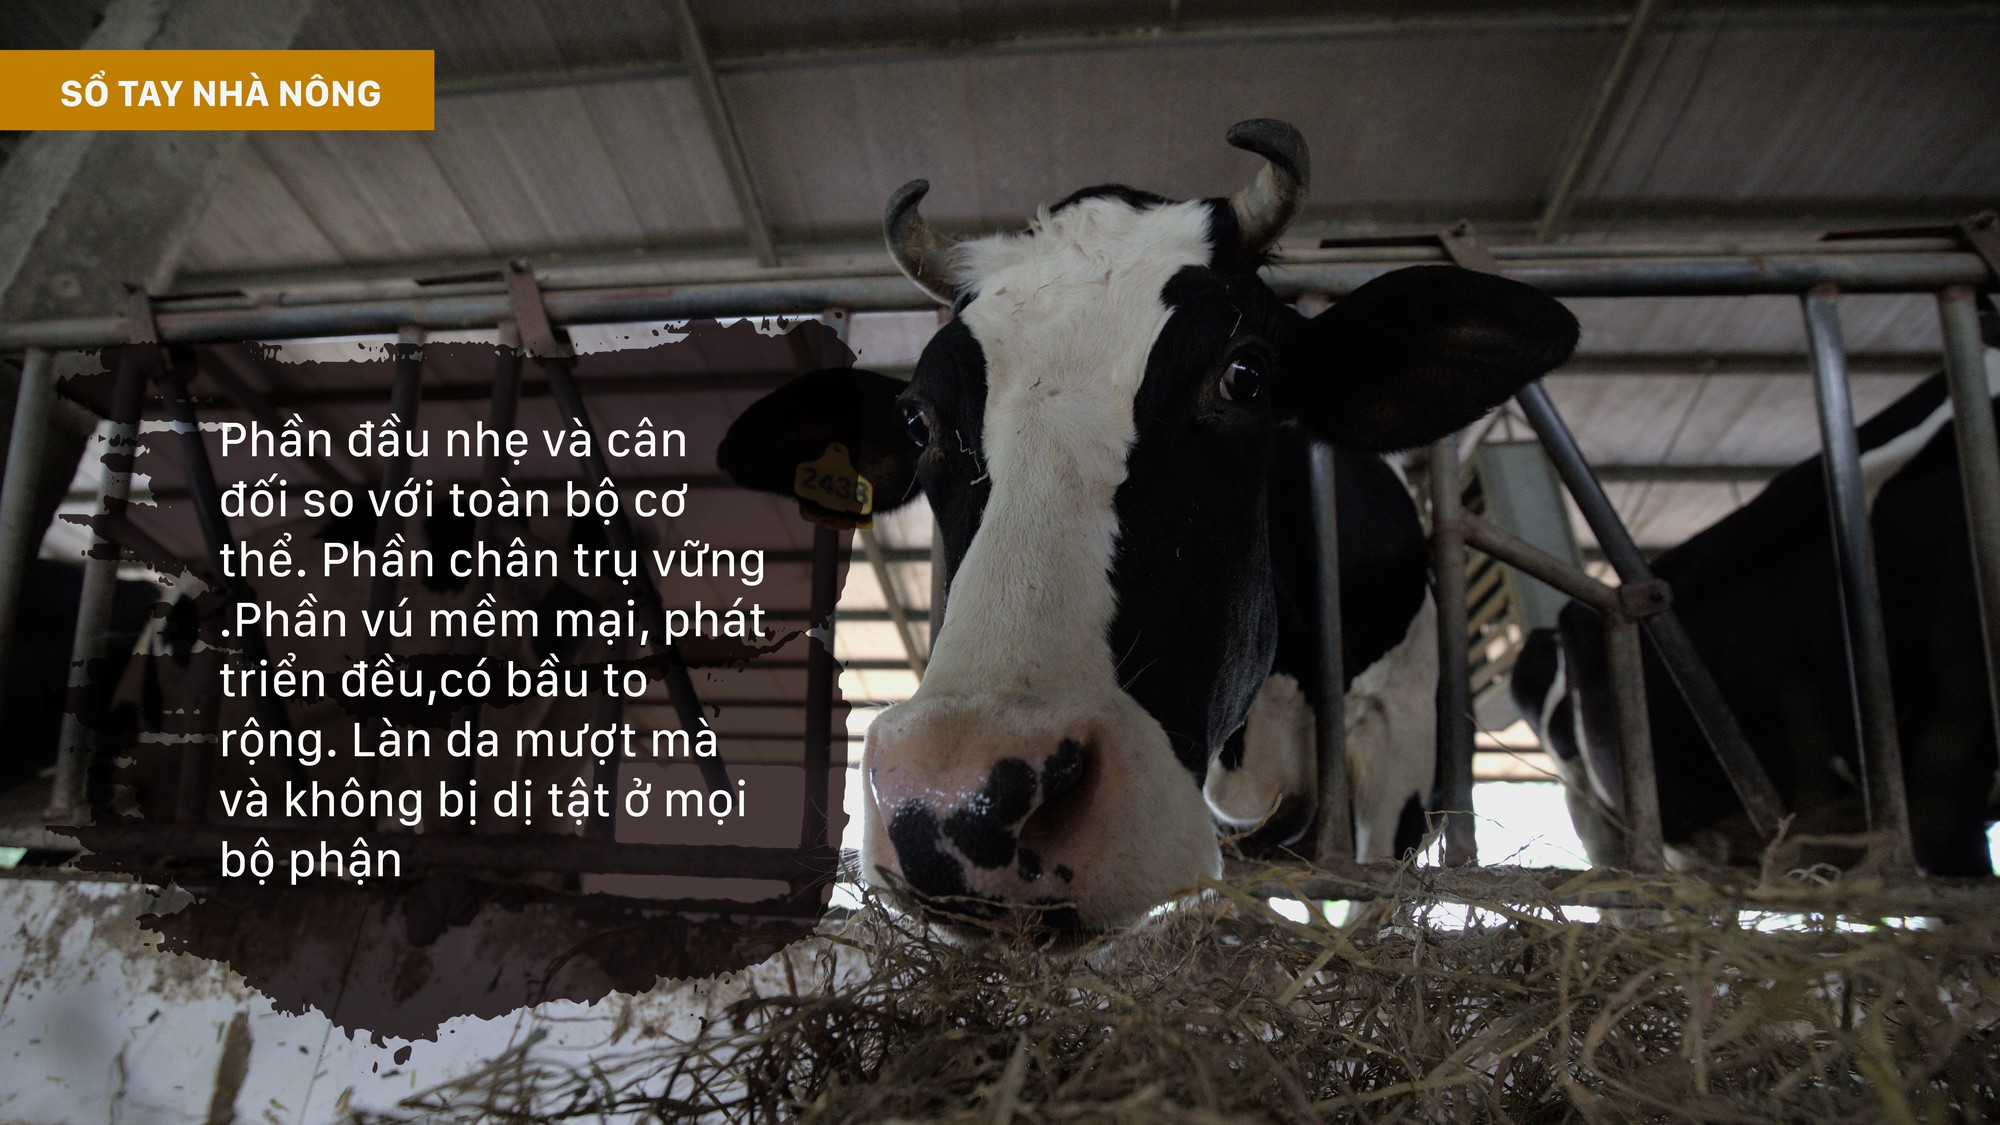 SỔ TAY NHÀ NÔNG: Những yếu tố ảnh hưởng đến chất lượng và sản lượng sữa bò - Ảnh 2.